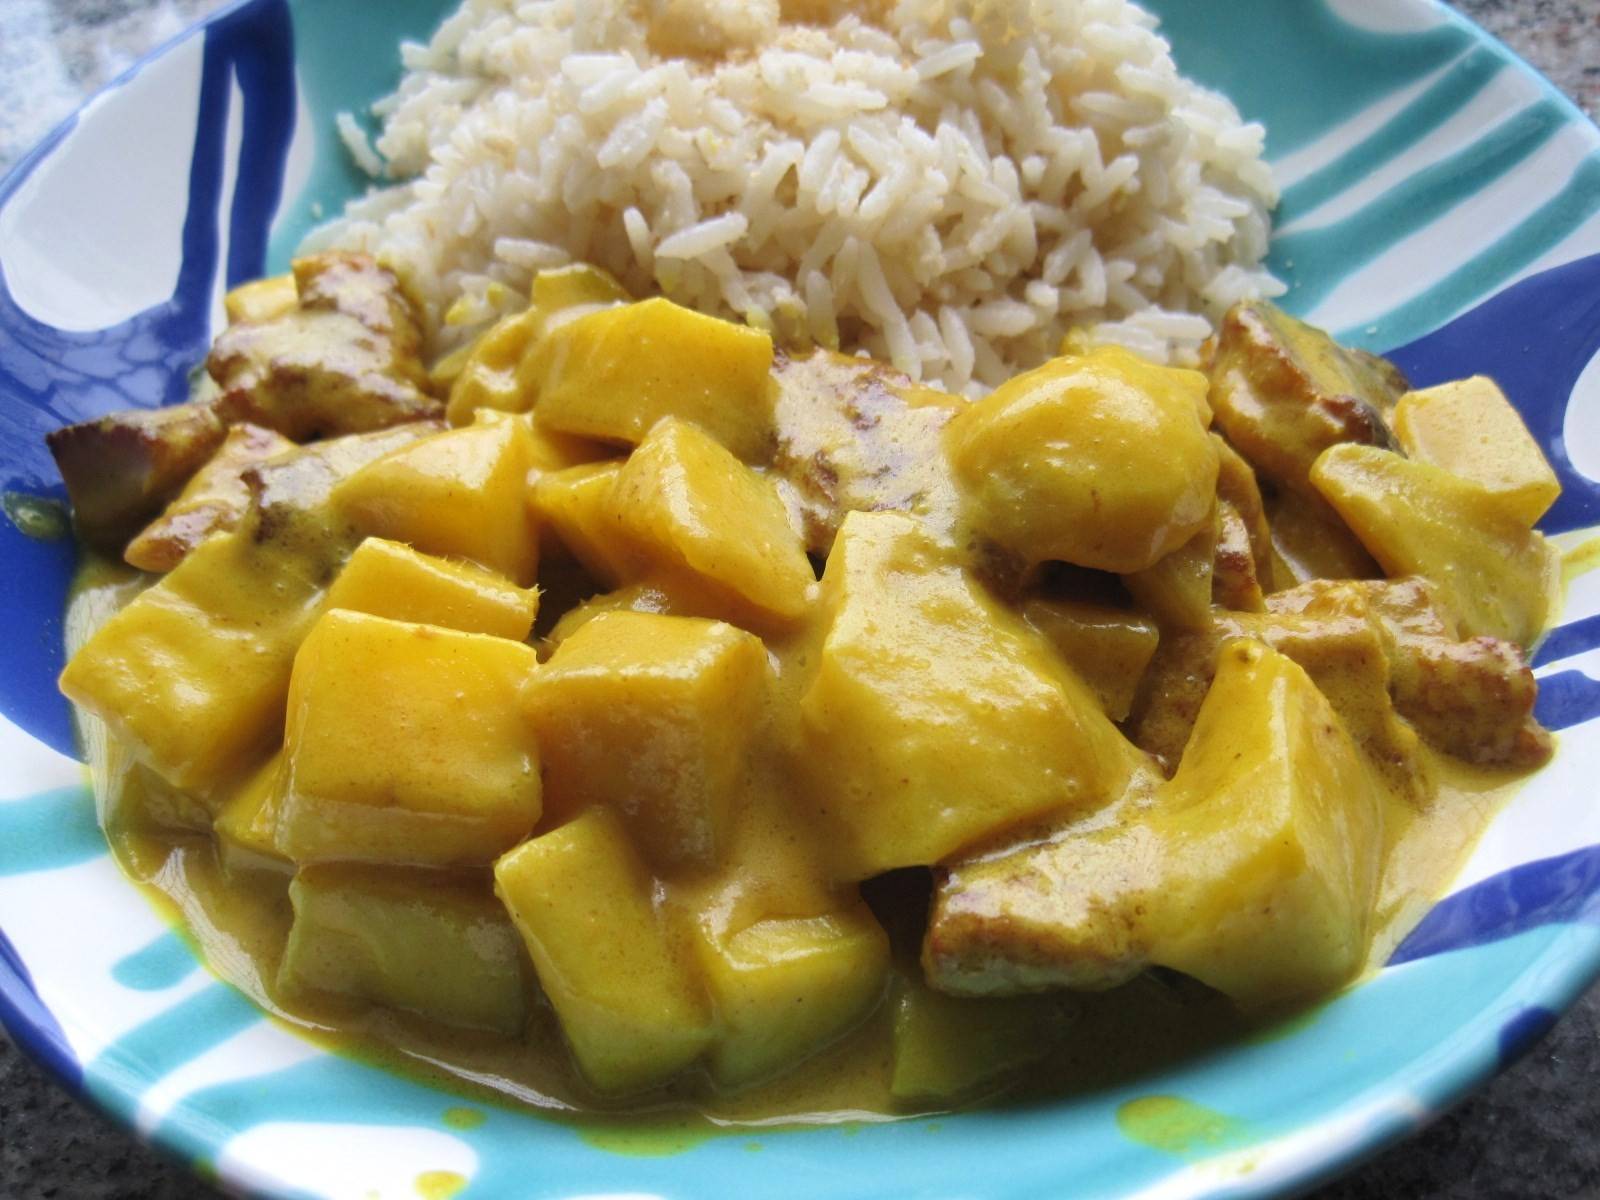 Seitan-Curry